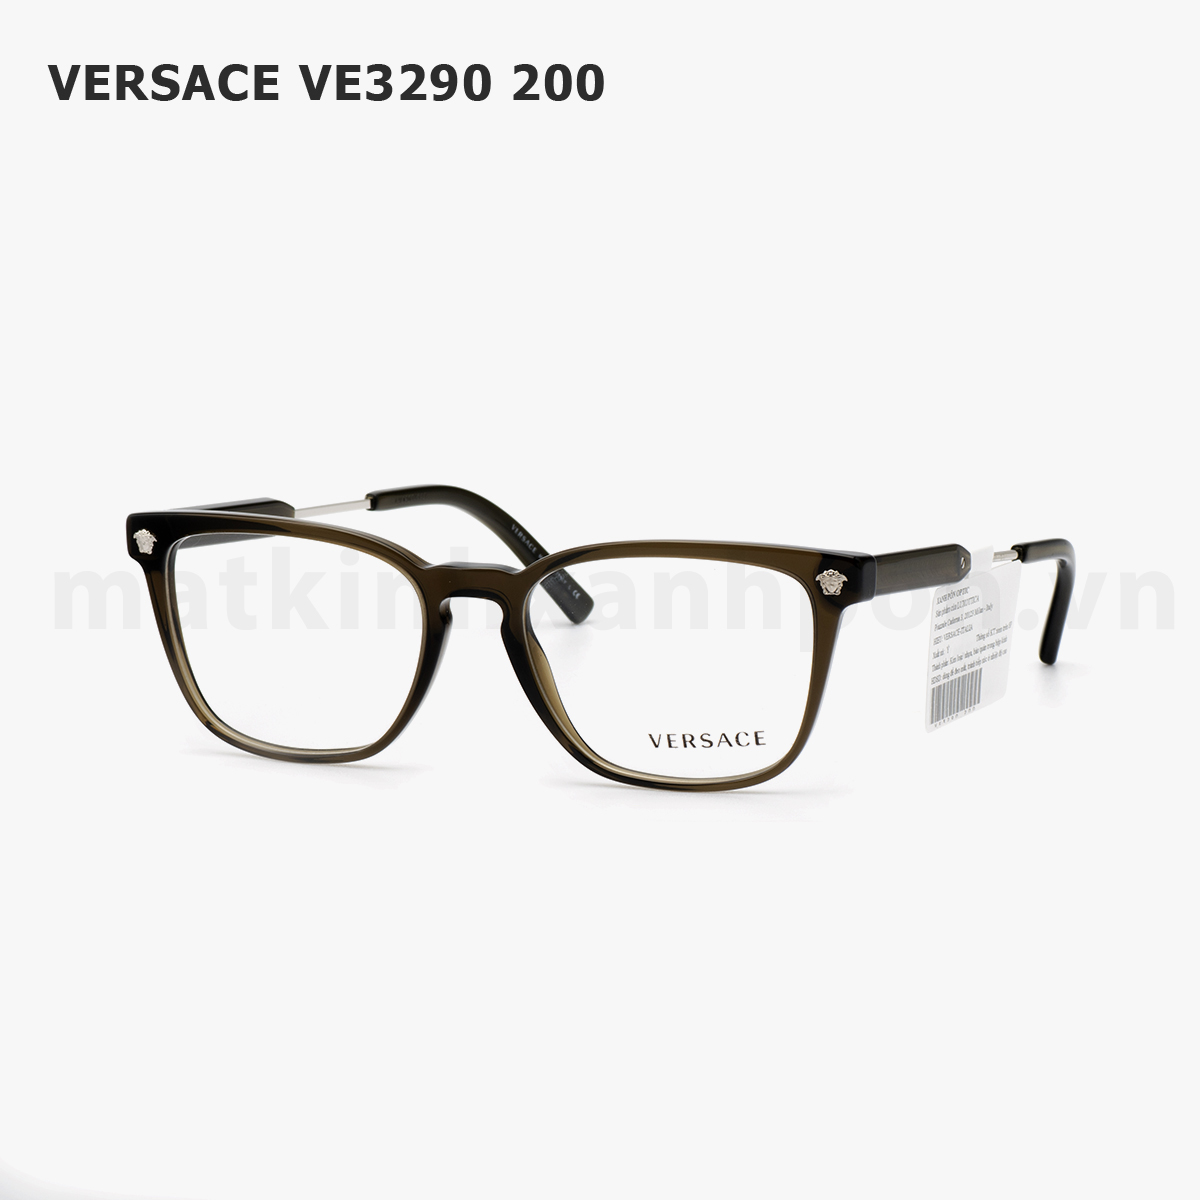 Versace VE3290 200